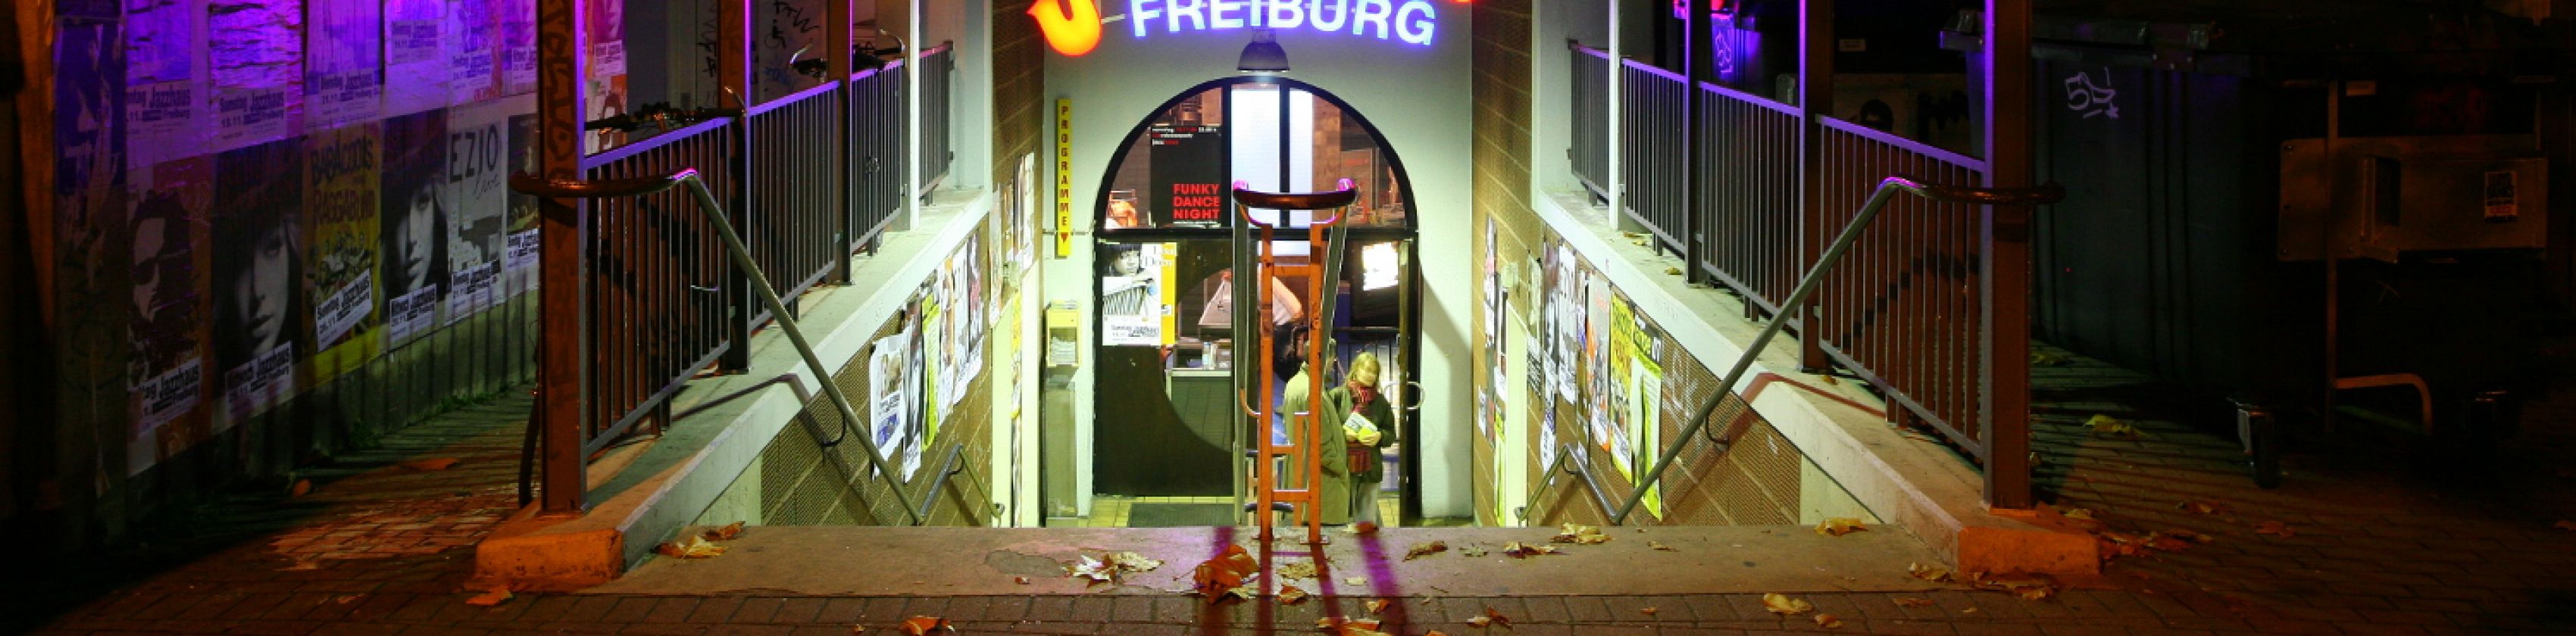 Jazzhaus Freiburg, © Jazzhaus Freiburg